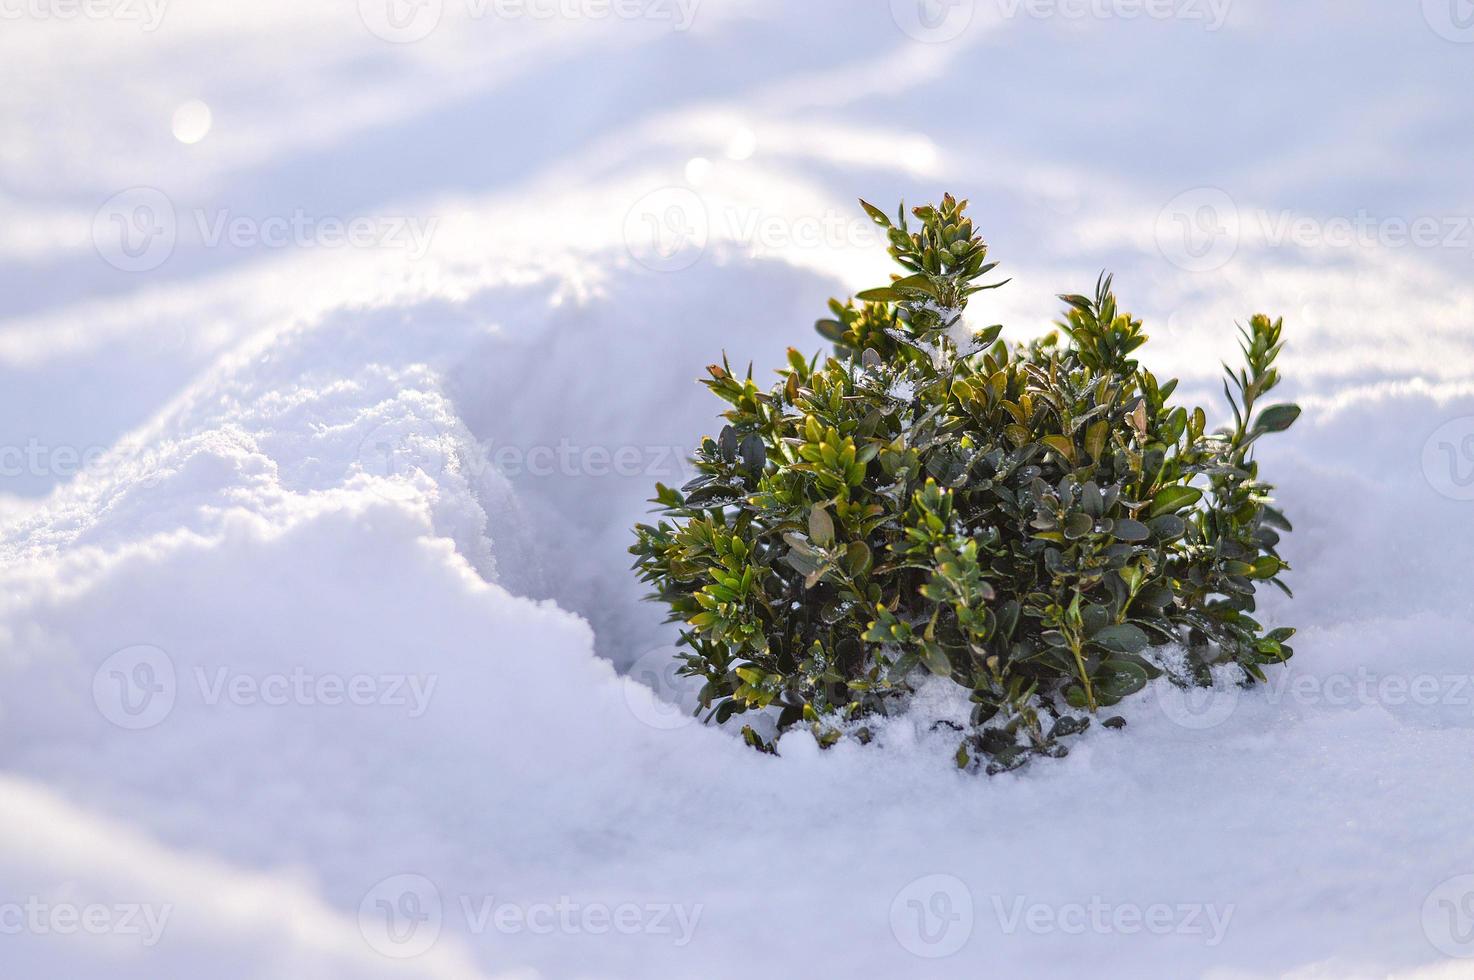 arbusto de buxo coberto de neve em tempo ensolarado, fundo de inverno foto